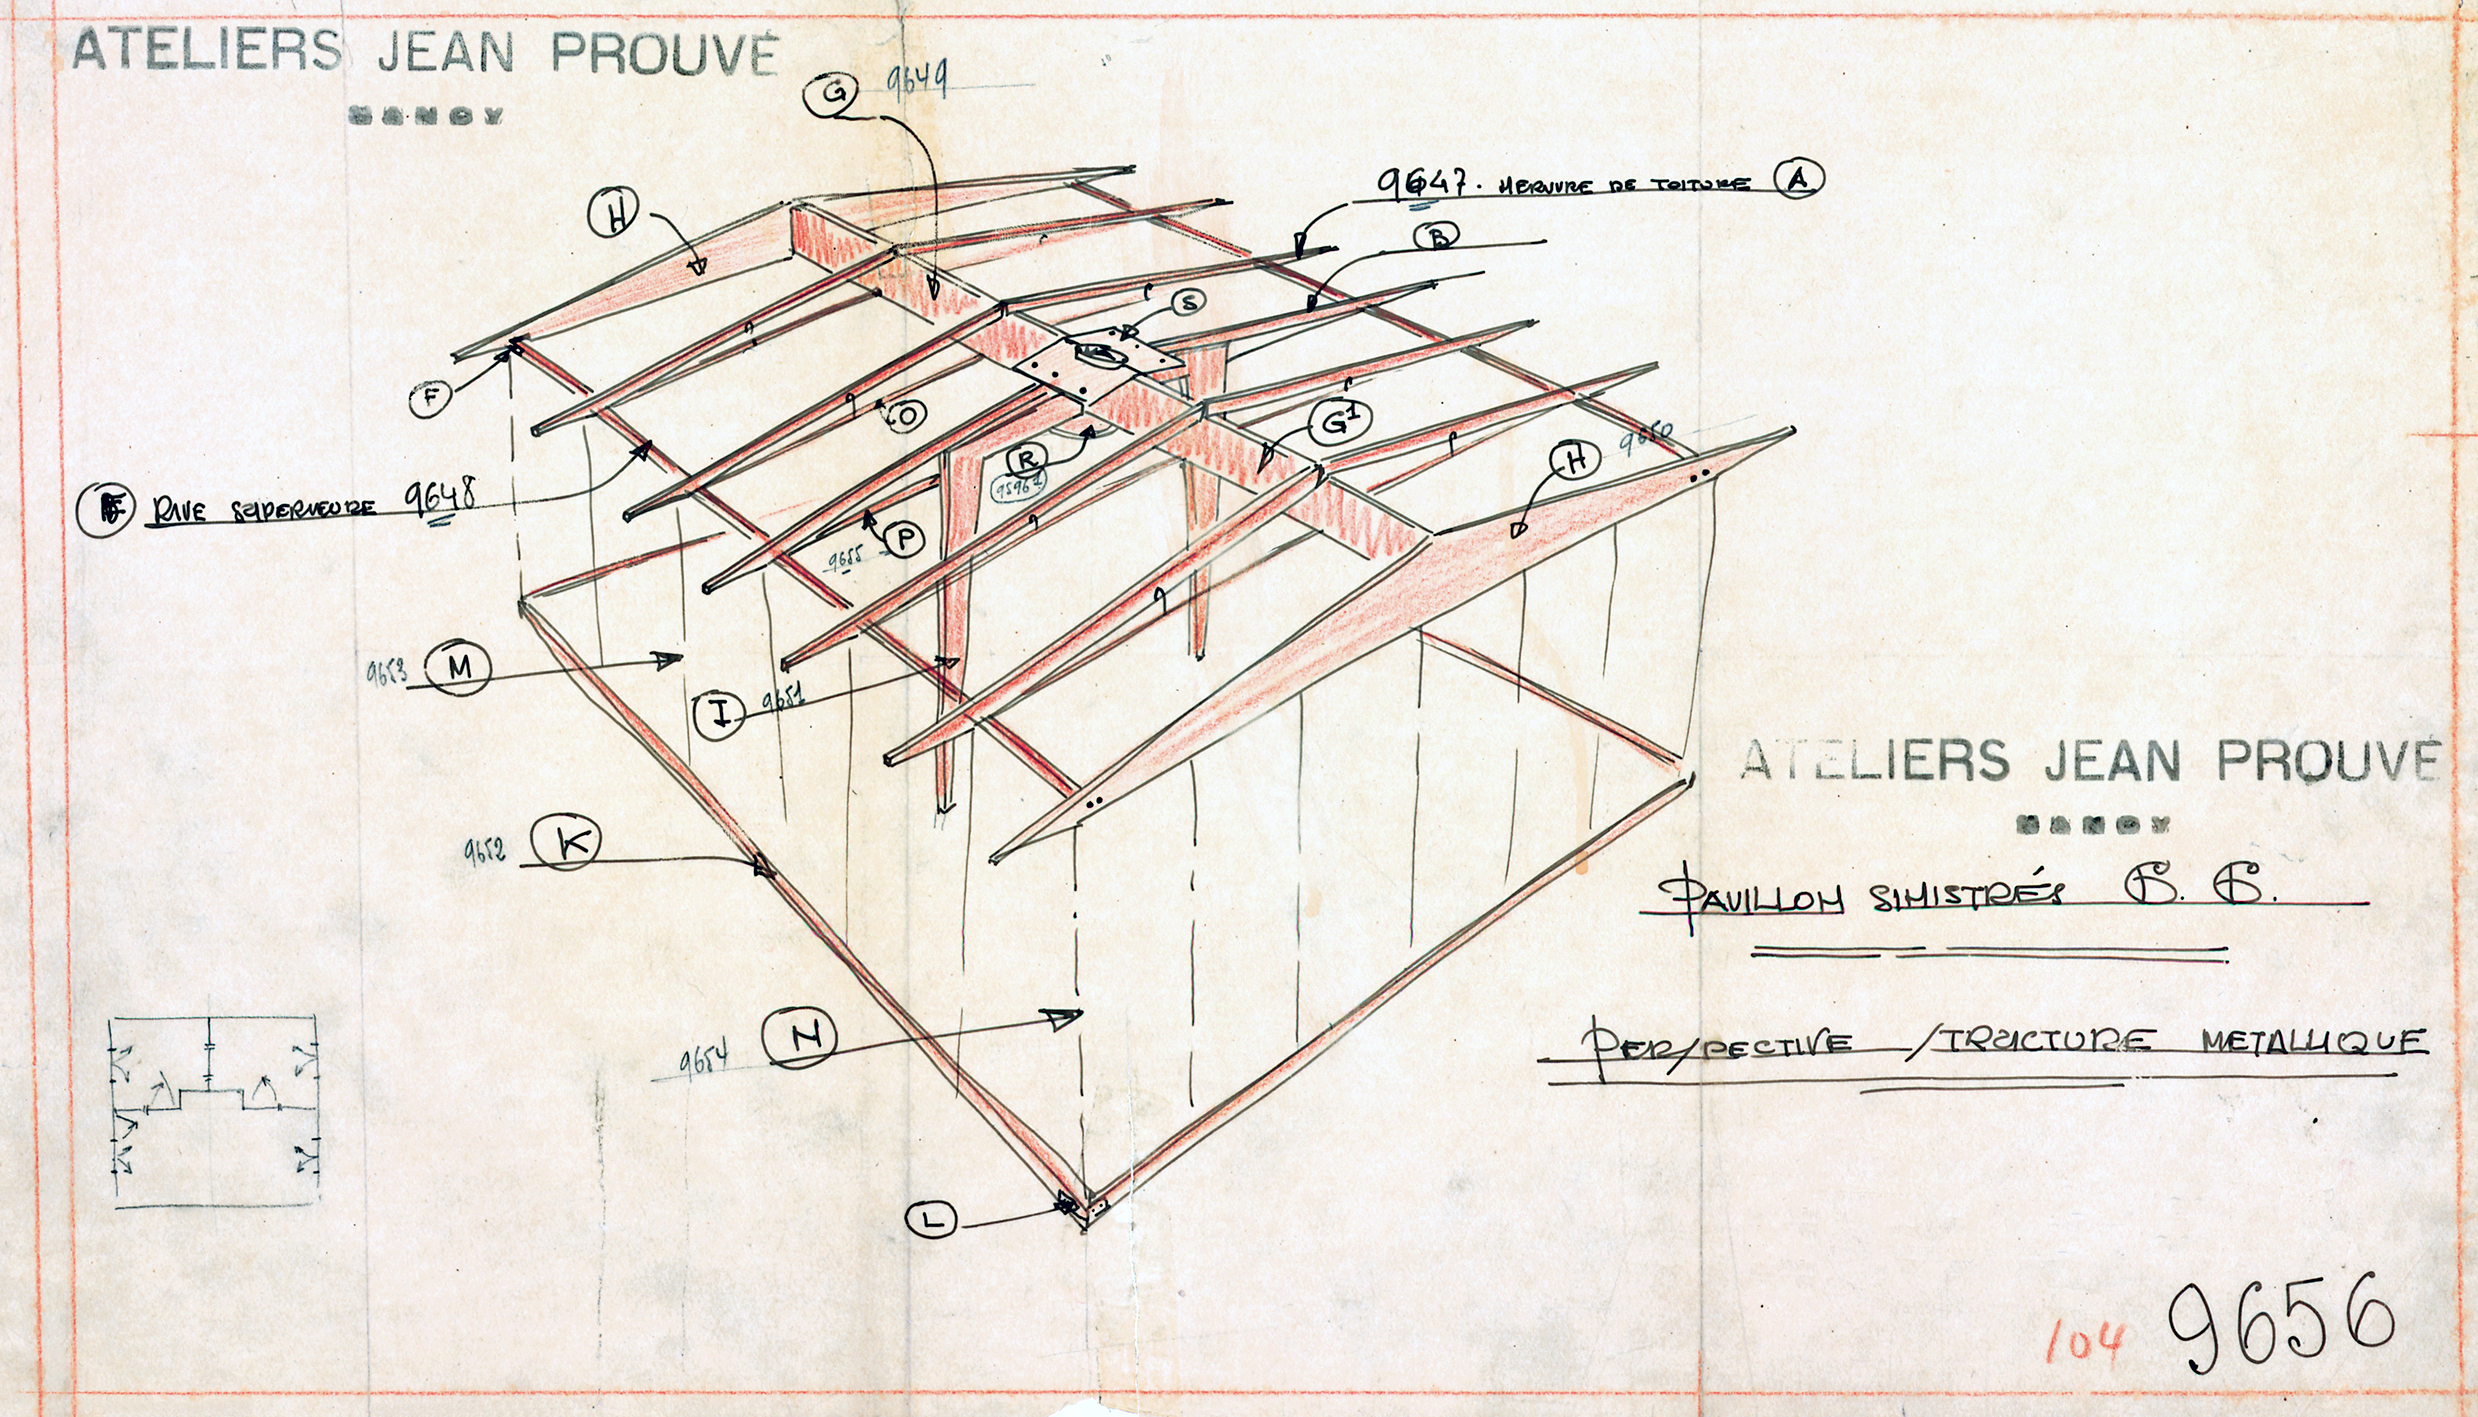 Ateliers Jean Prouvé. « Pavillon sinistrés 6x6, perspective, structure métallique », plan n° 9656, avril 1945.